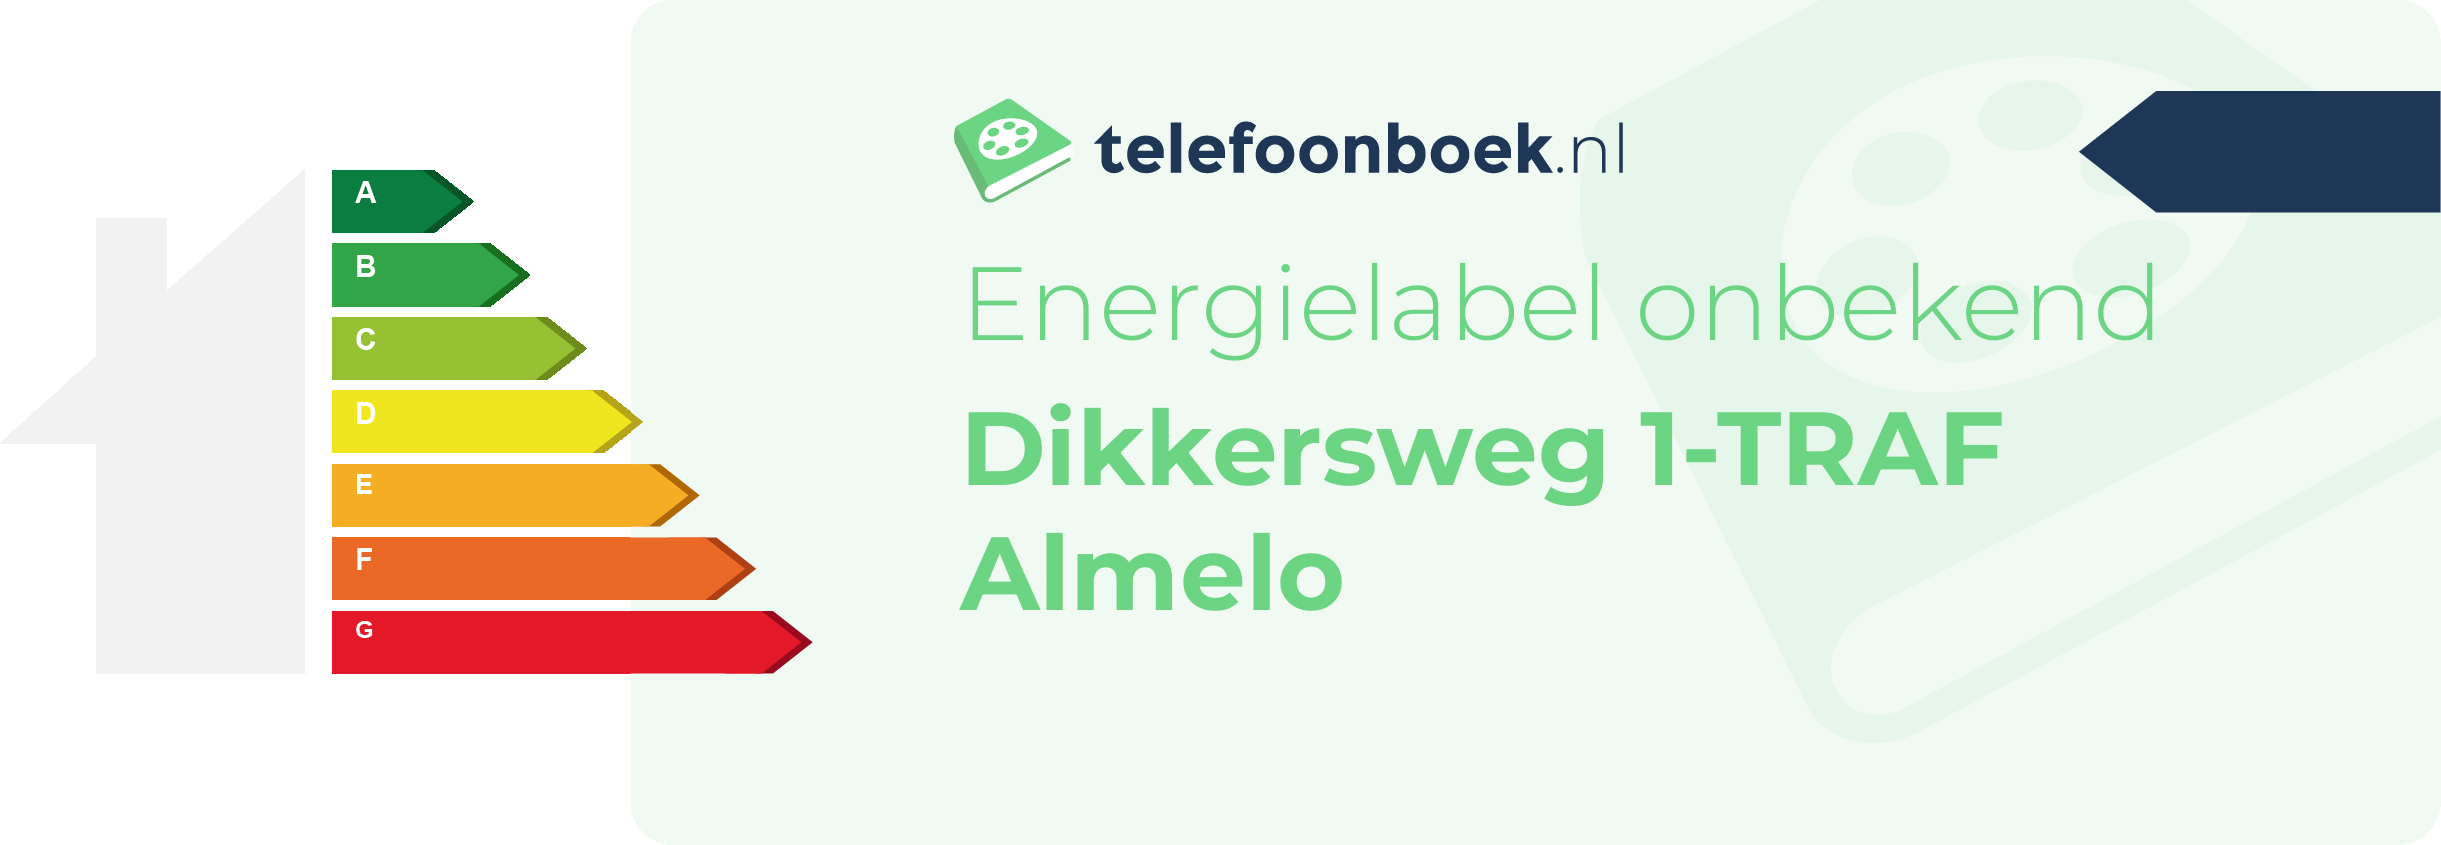 Energielabel Dikkersweg 1-TRAF Almelo